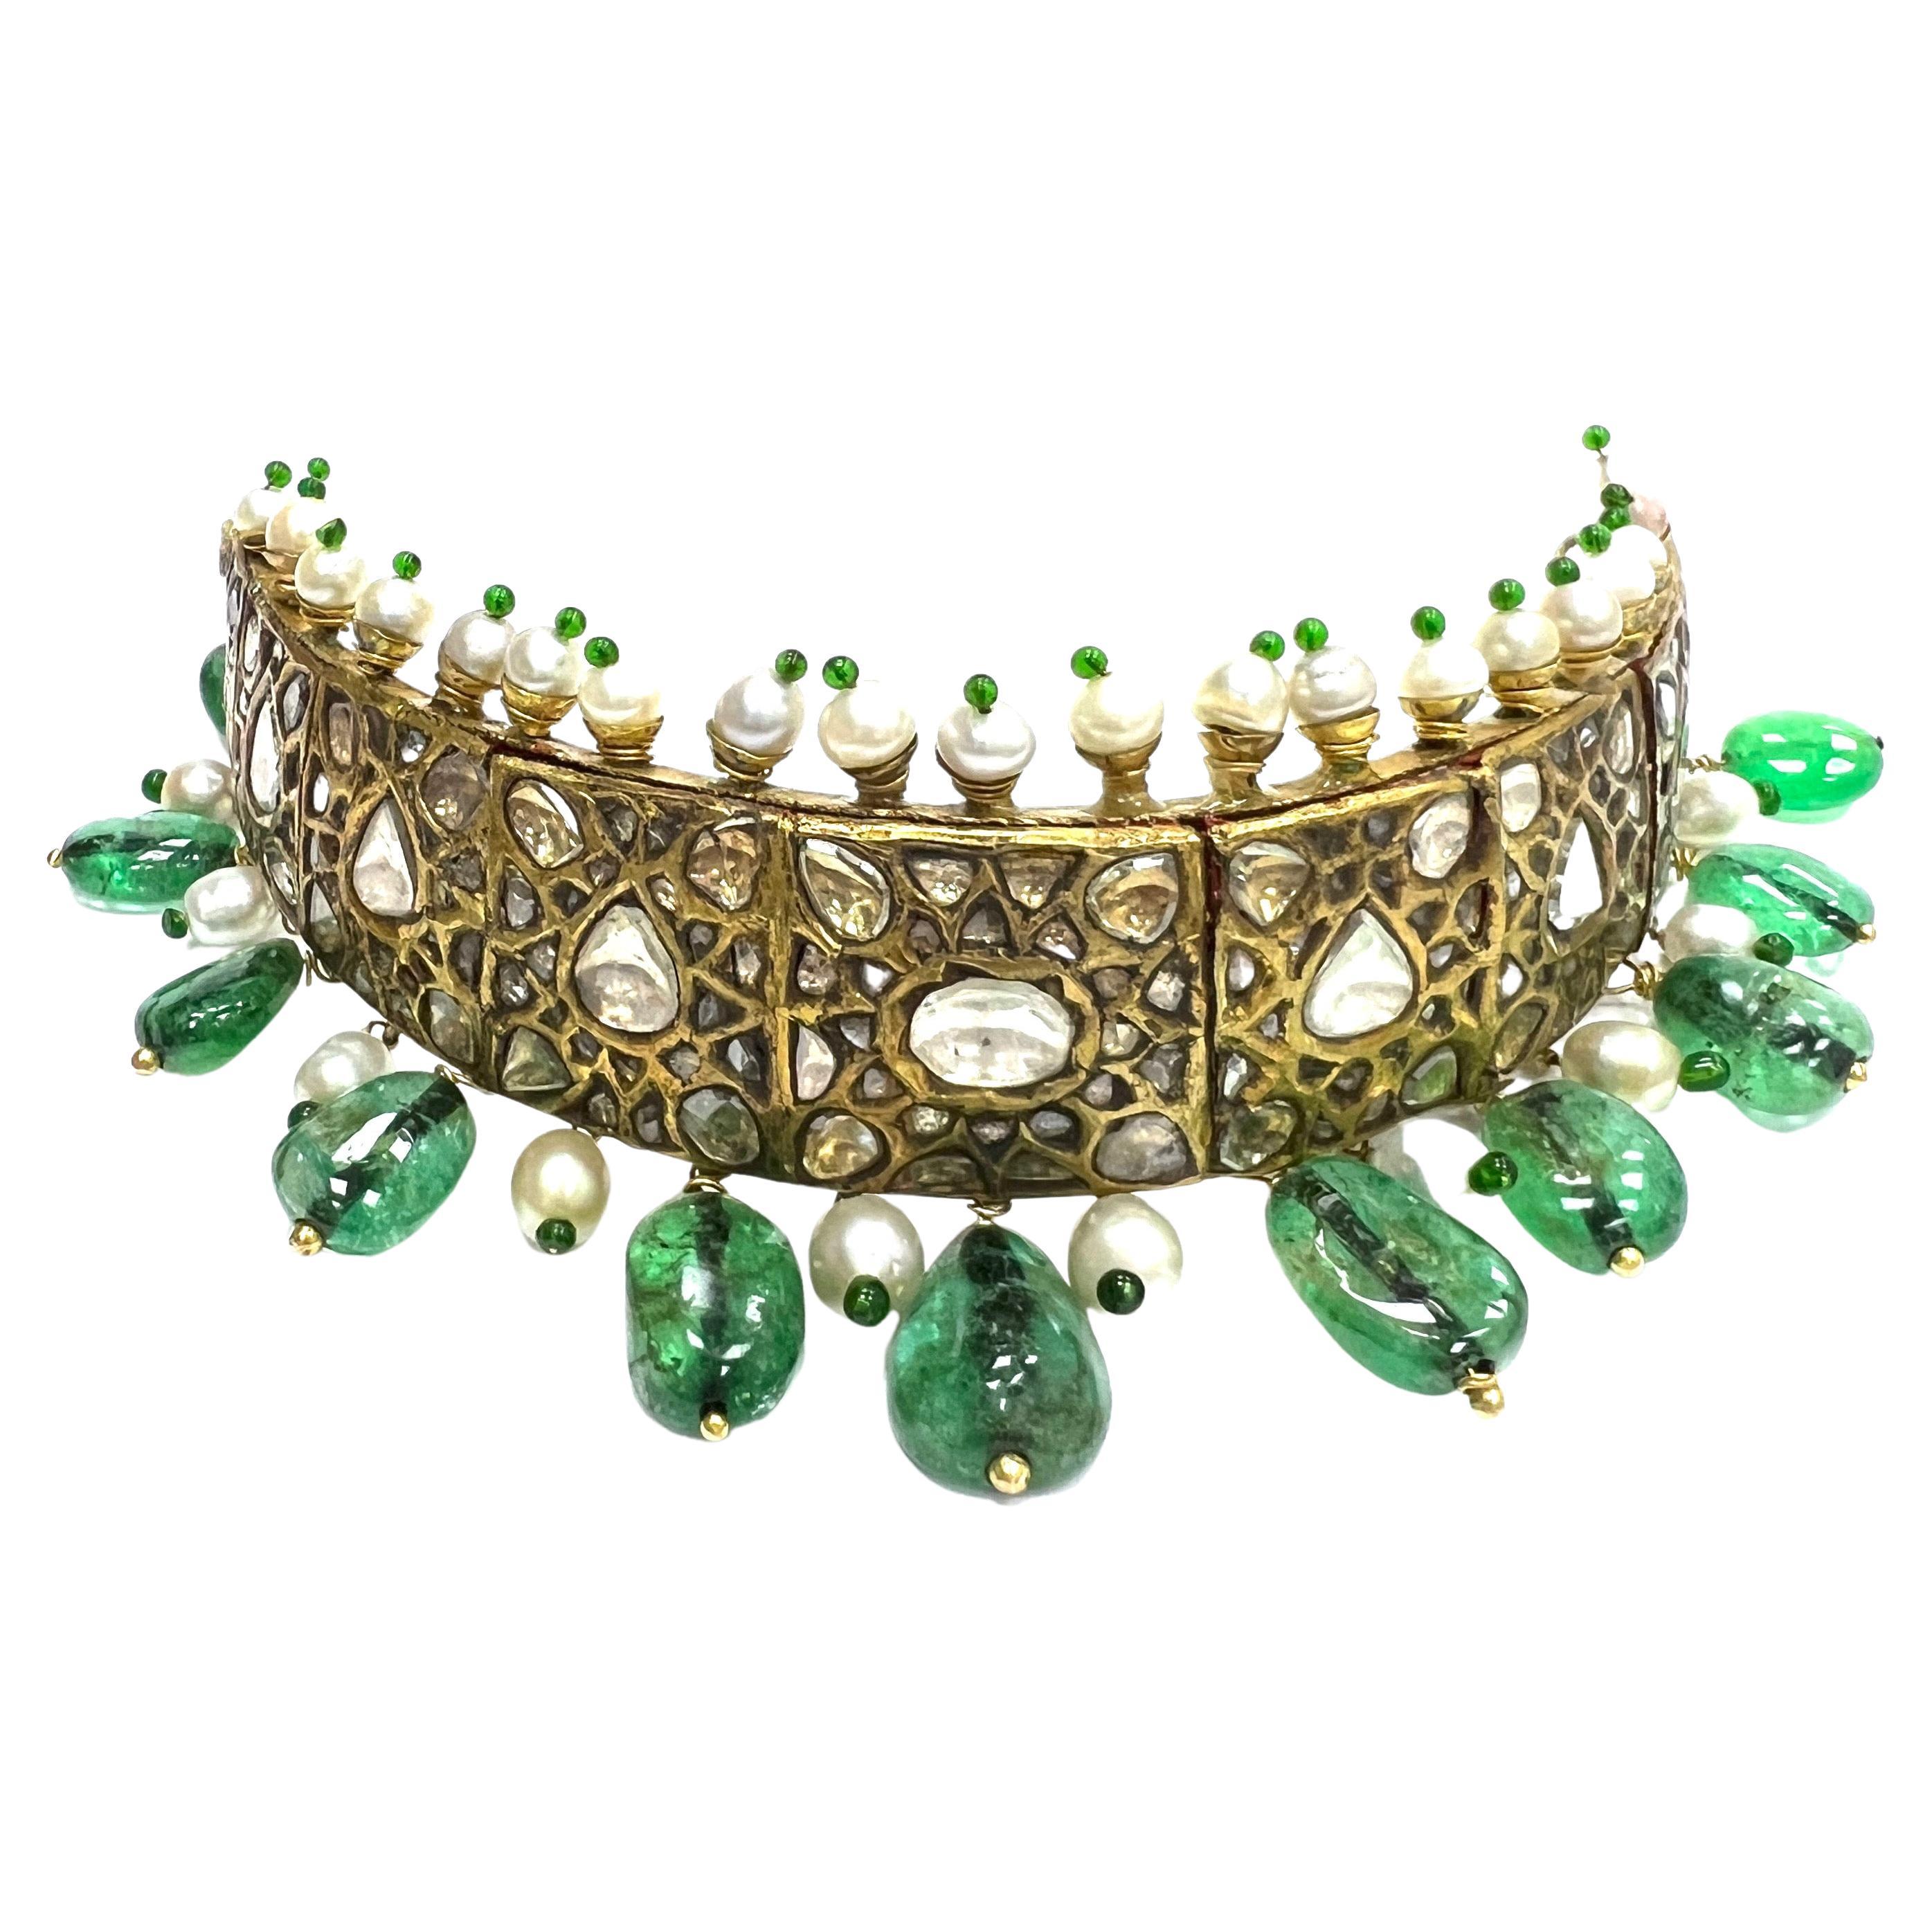 Smaragd Perle 18k Gelbgold Indische Kopfbedeckung

Sockel aus 18 Karat Gelbgold, mit 11 ungeschliffenen Smaragden in verschiedenen Größen von insgesamt ca. 60-62 Karat (die größte Perle misst 17 x 12 mm), Diamanten im Rosenschliff von insgesamt ca.